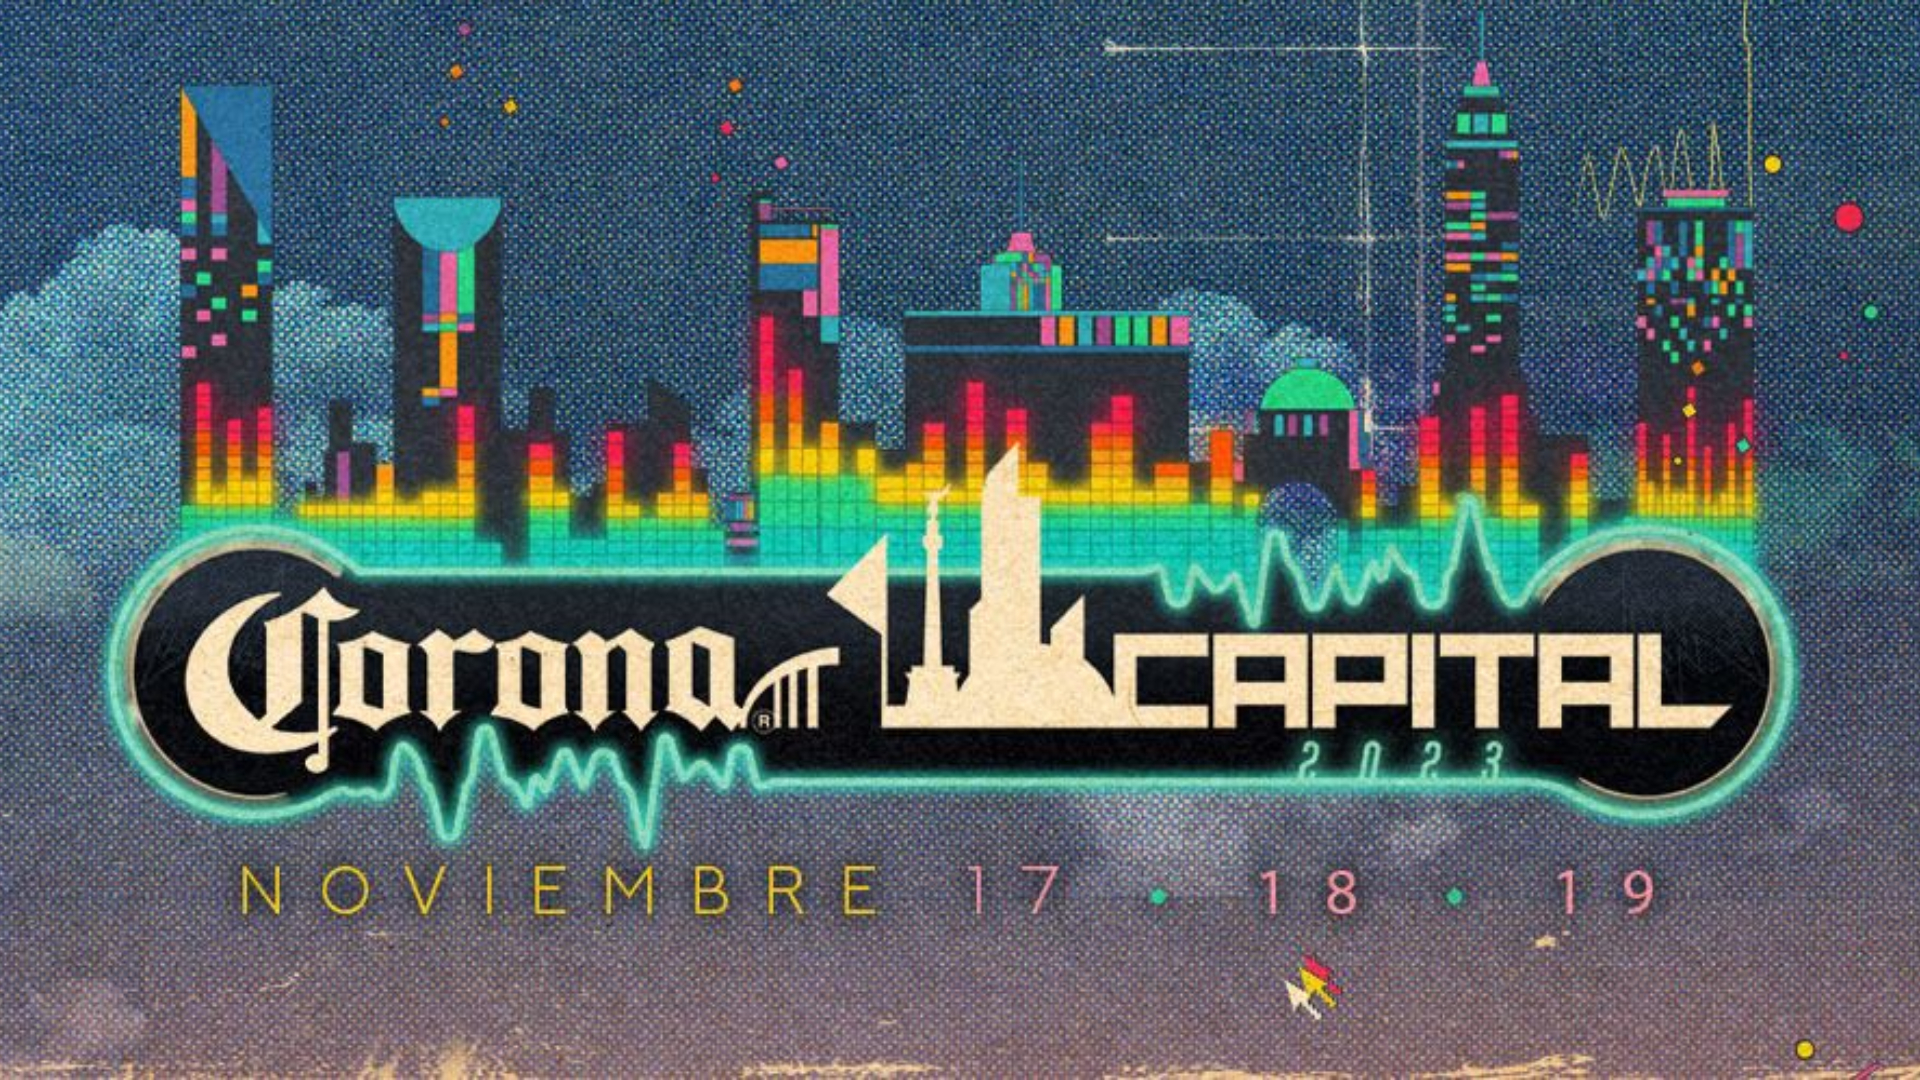 Corona Capital 2023: fecha, boletos, cartel y todos los detalles para ver a Blur, Arcade Fire y The Cure